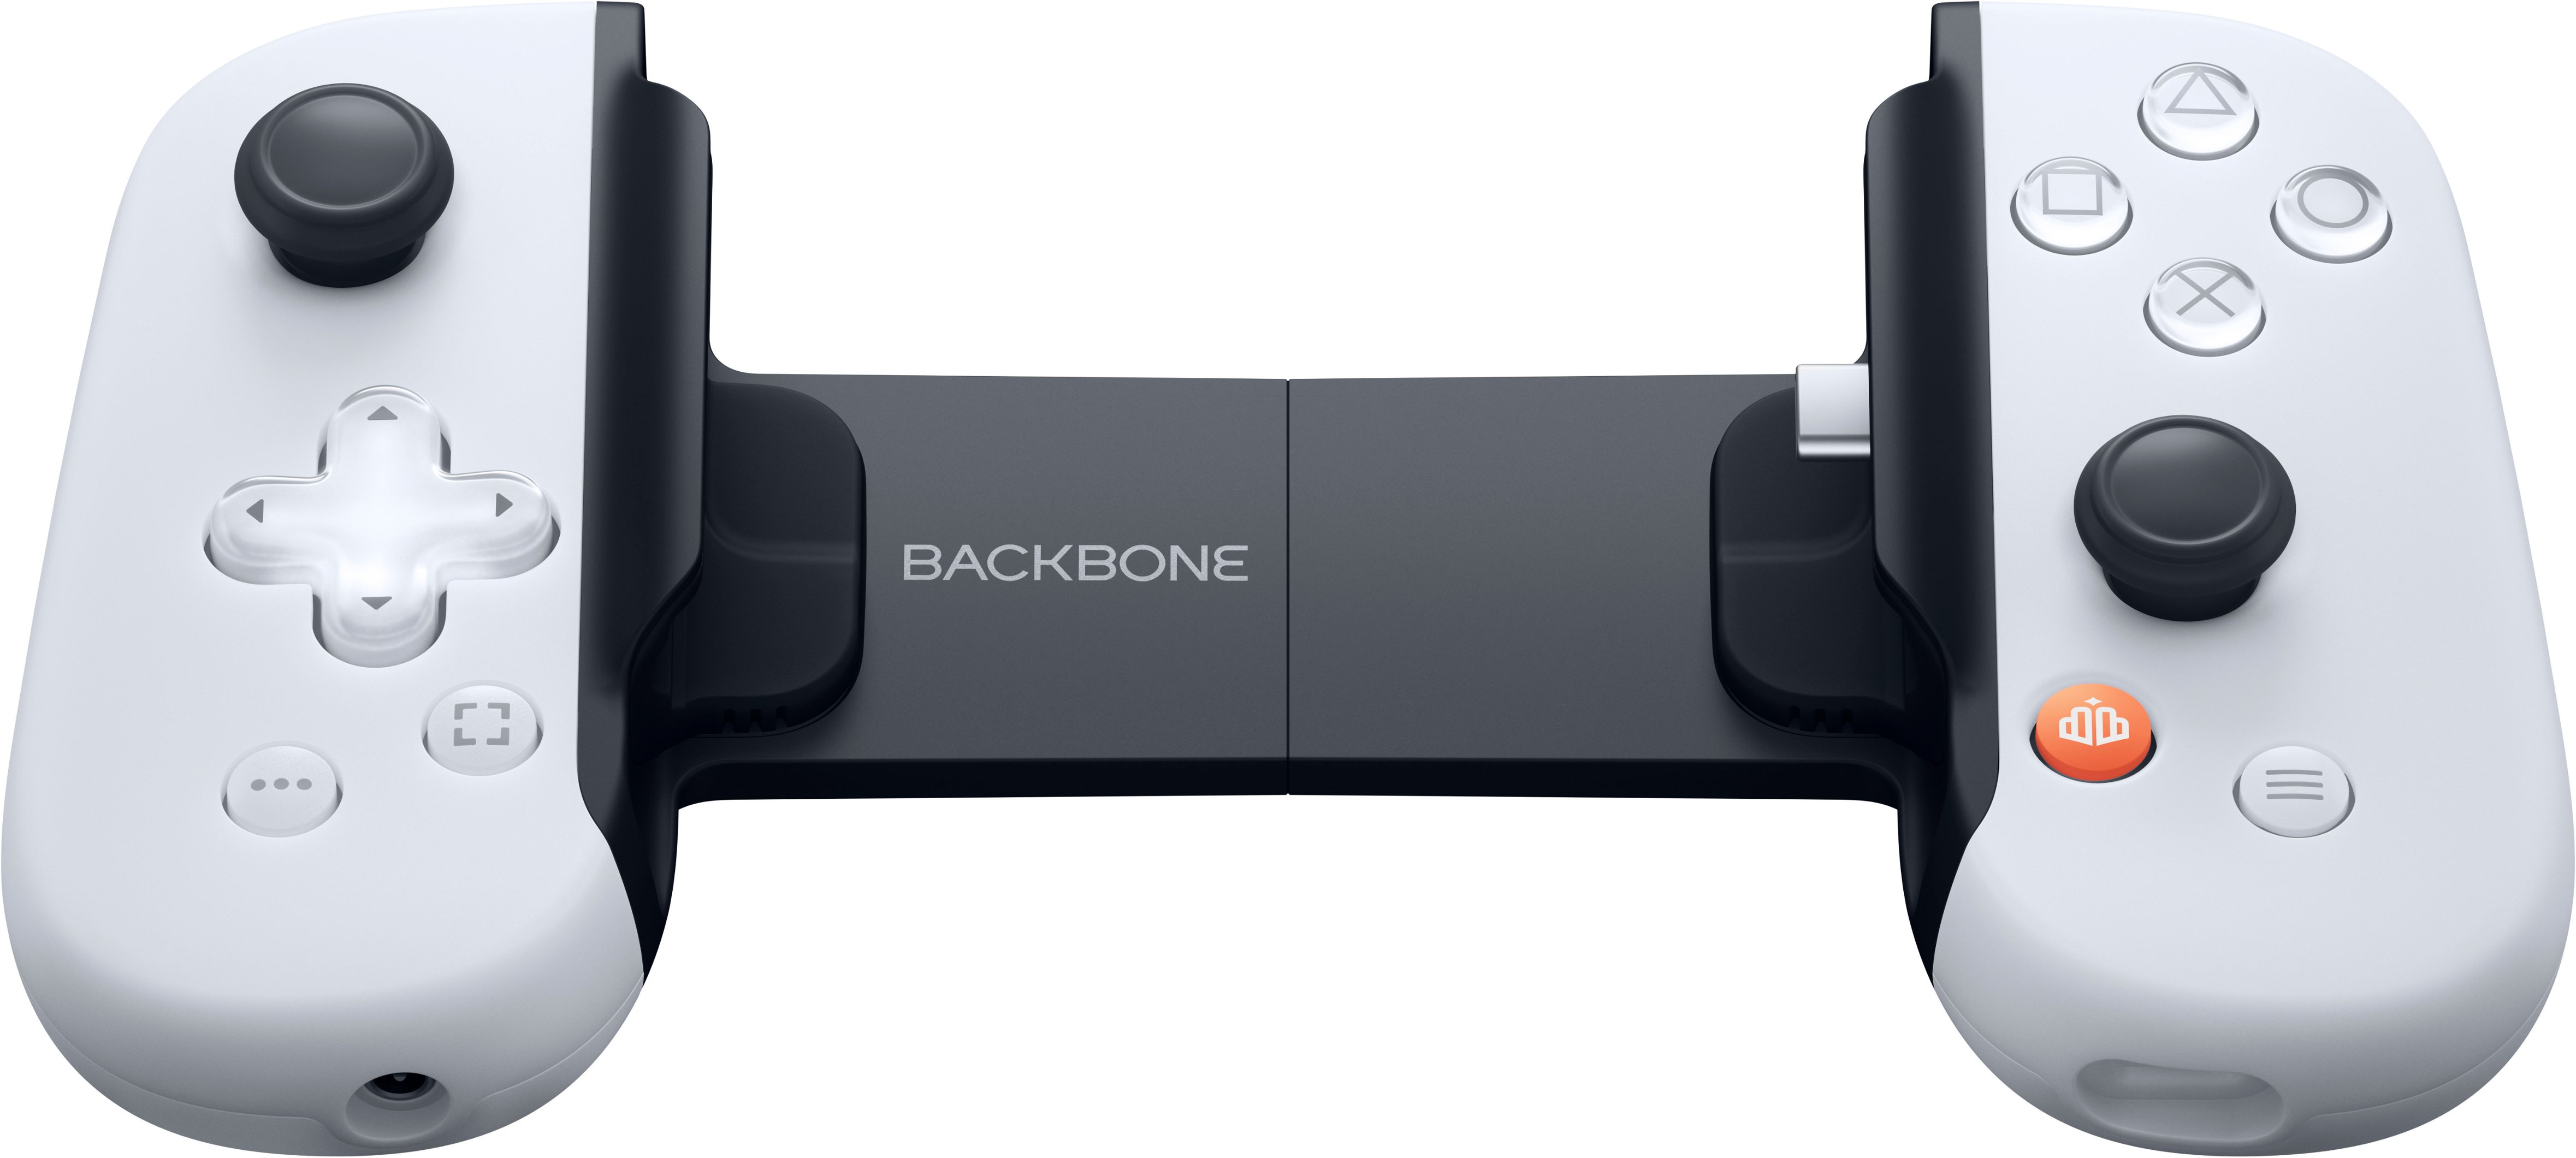 Backbone Um gamepad/controlador iOS Mobile para Apple iPhone (certificado  MFI) – Apple Arcade, Playstation Remote Play, Stadia, COD Mobile [1 mês  Xbox Game Pass Ultimate Digital Code incluído] : : Games e  Consoles